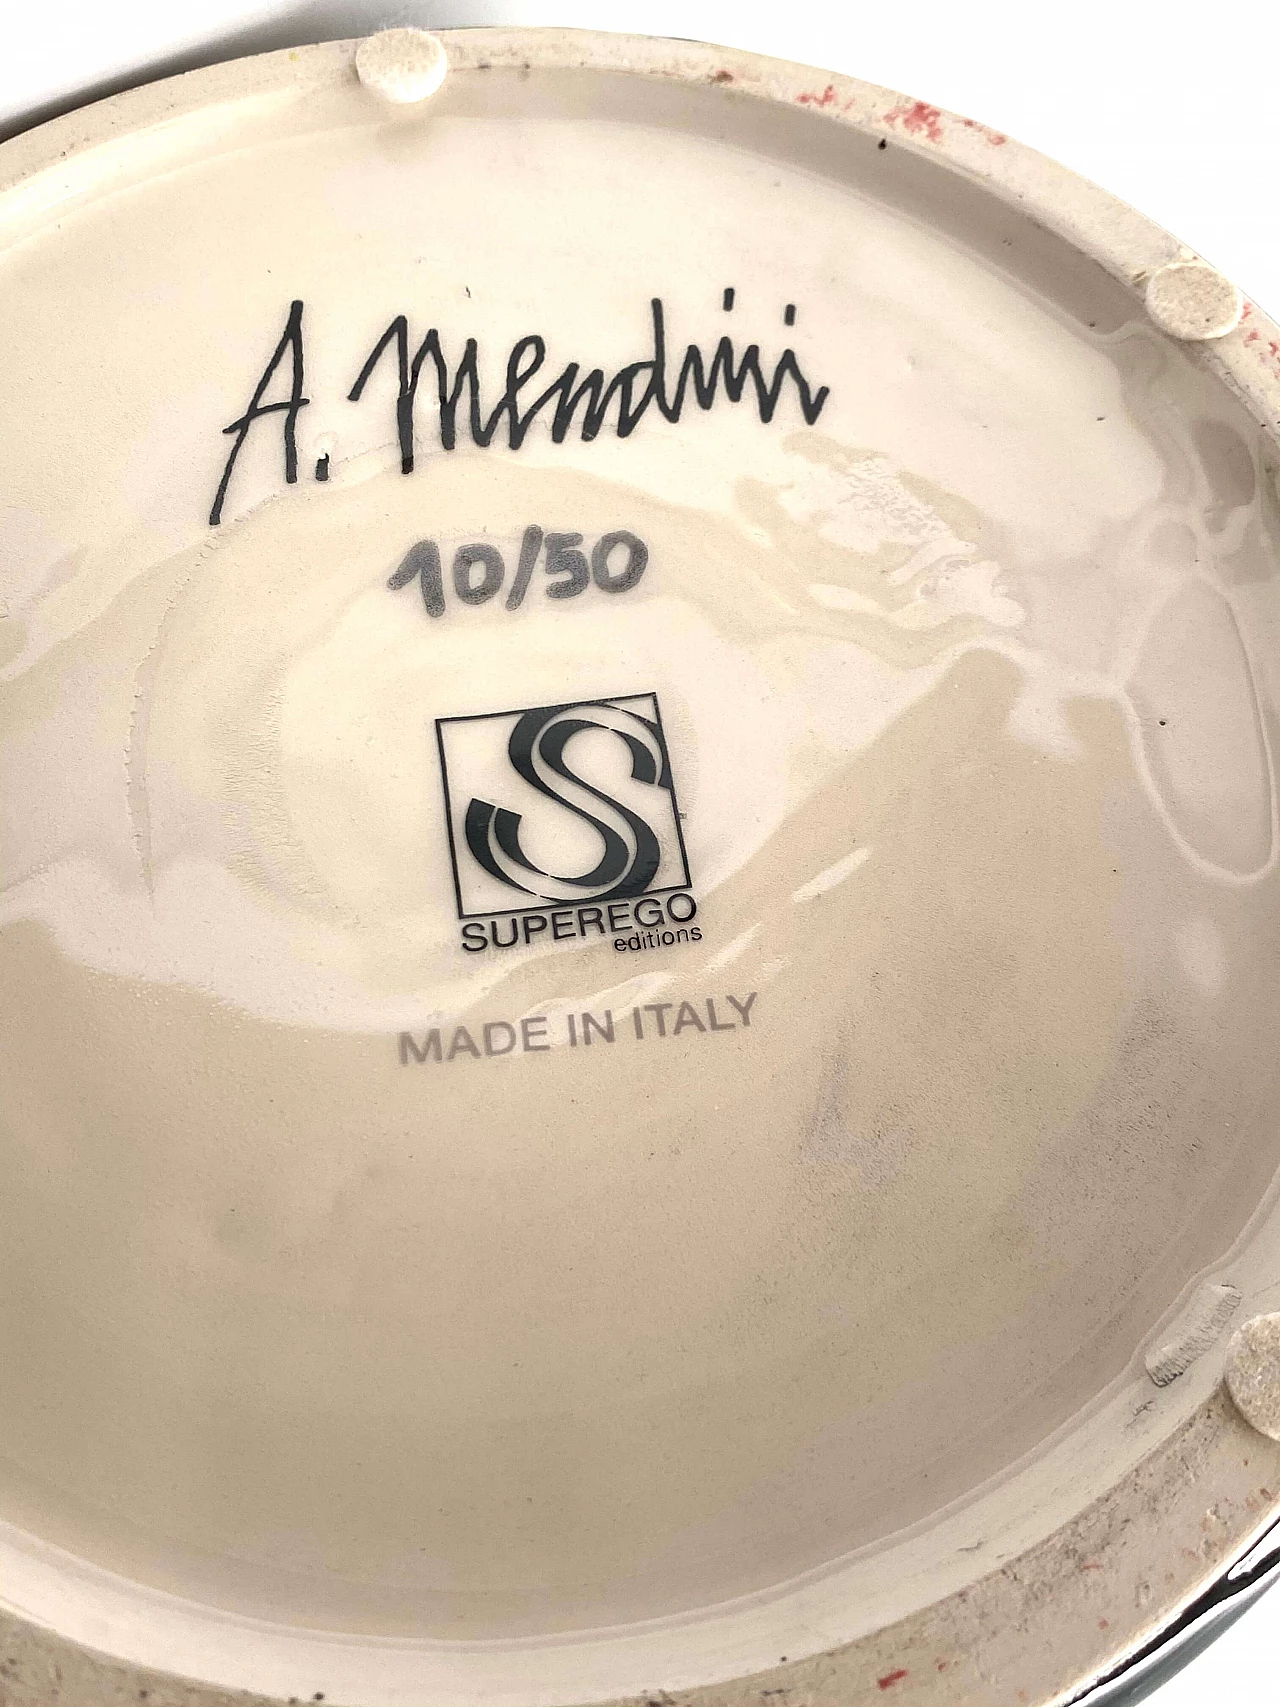 Totem di Alessandro Mendini "Stoa" per Superego, numerato 10/50 1184627